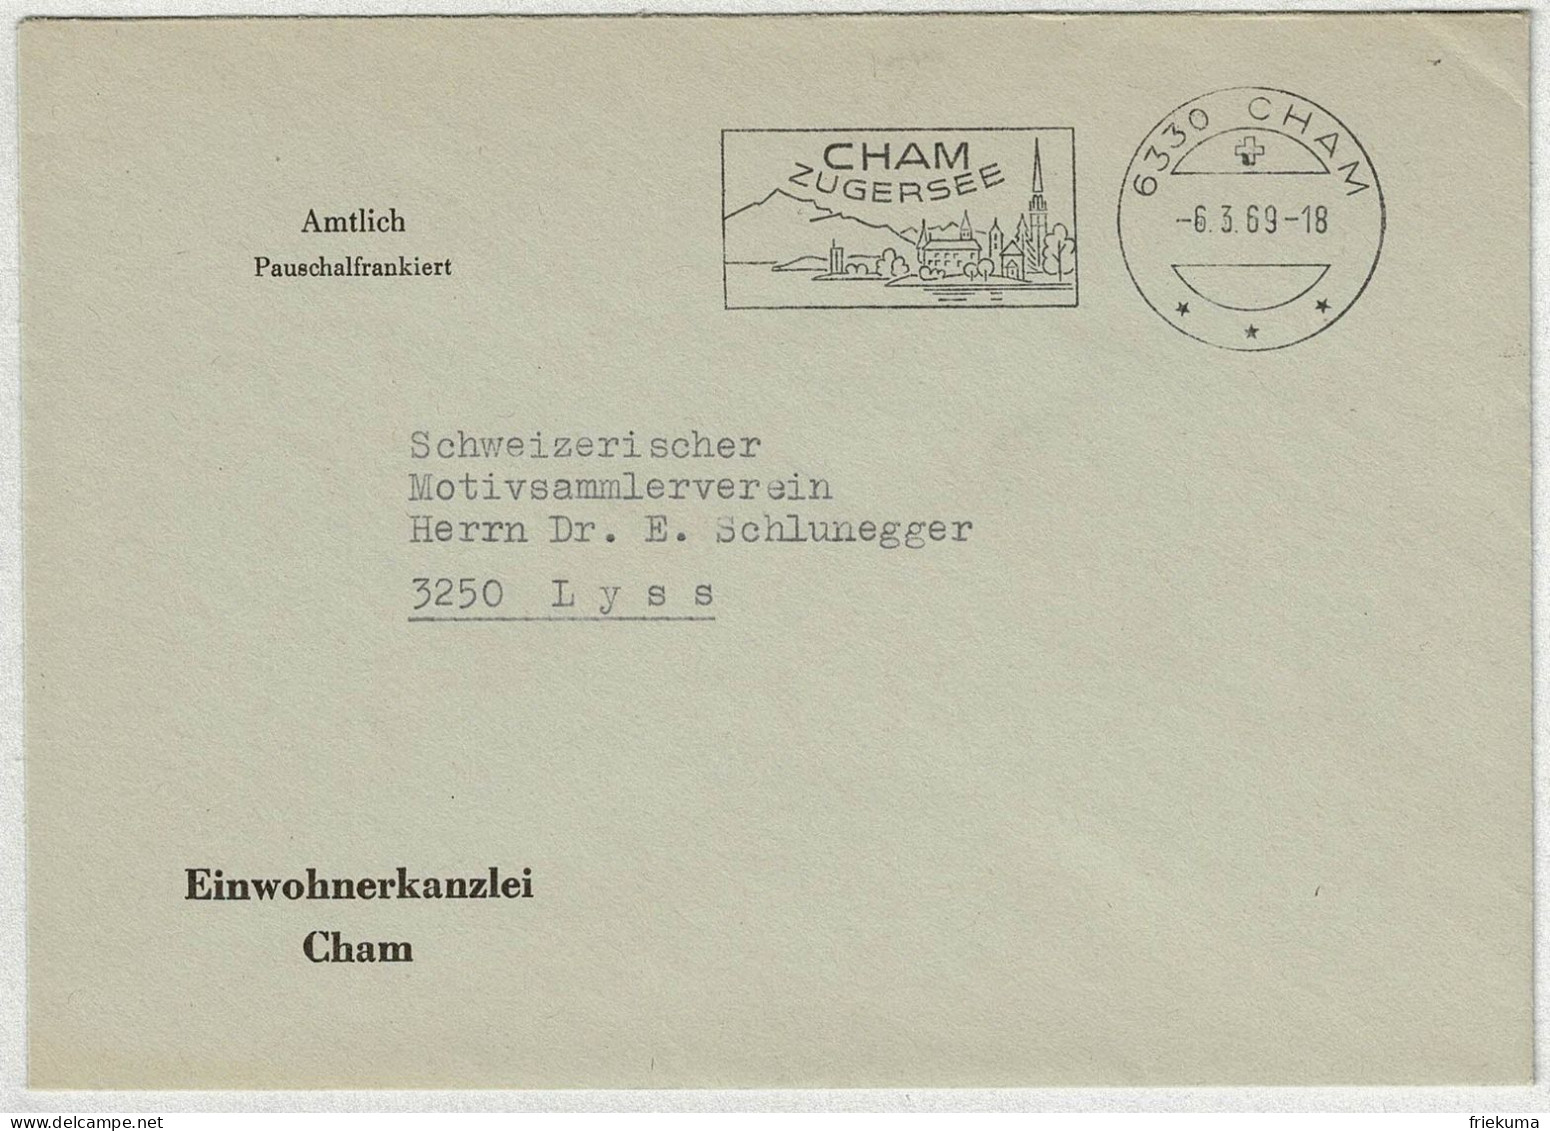 Schweiz 1969, Brief Amtlich Pauschalfrankiert Cham - Lyss - Storia Postale